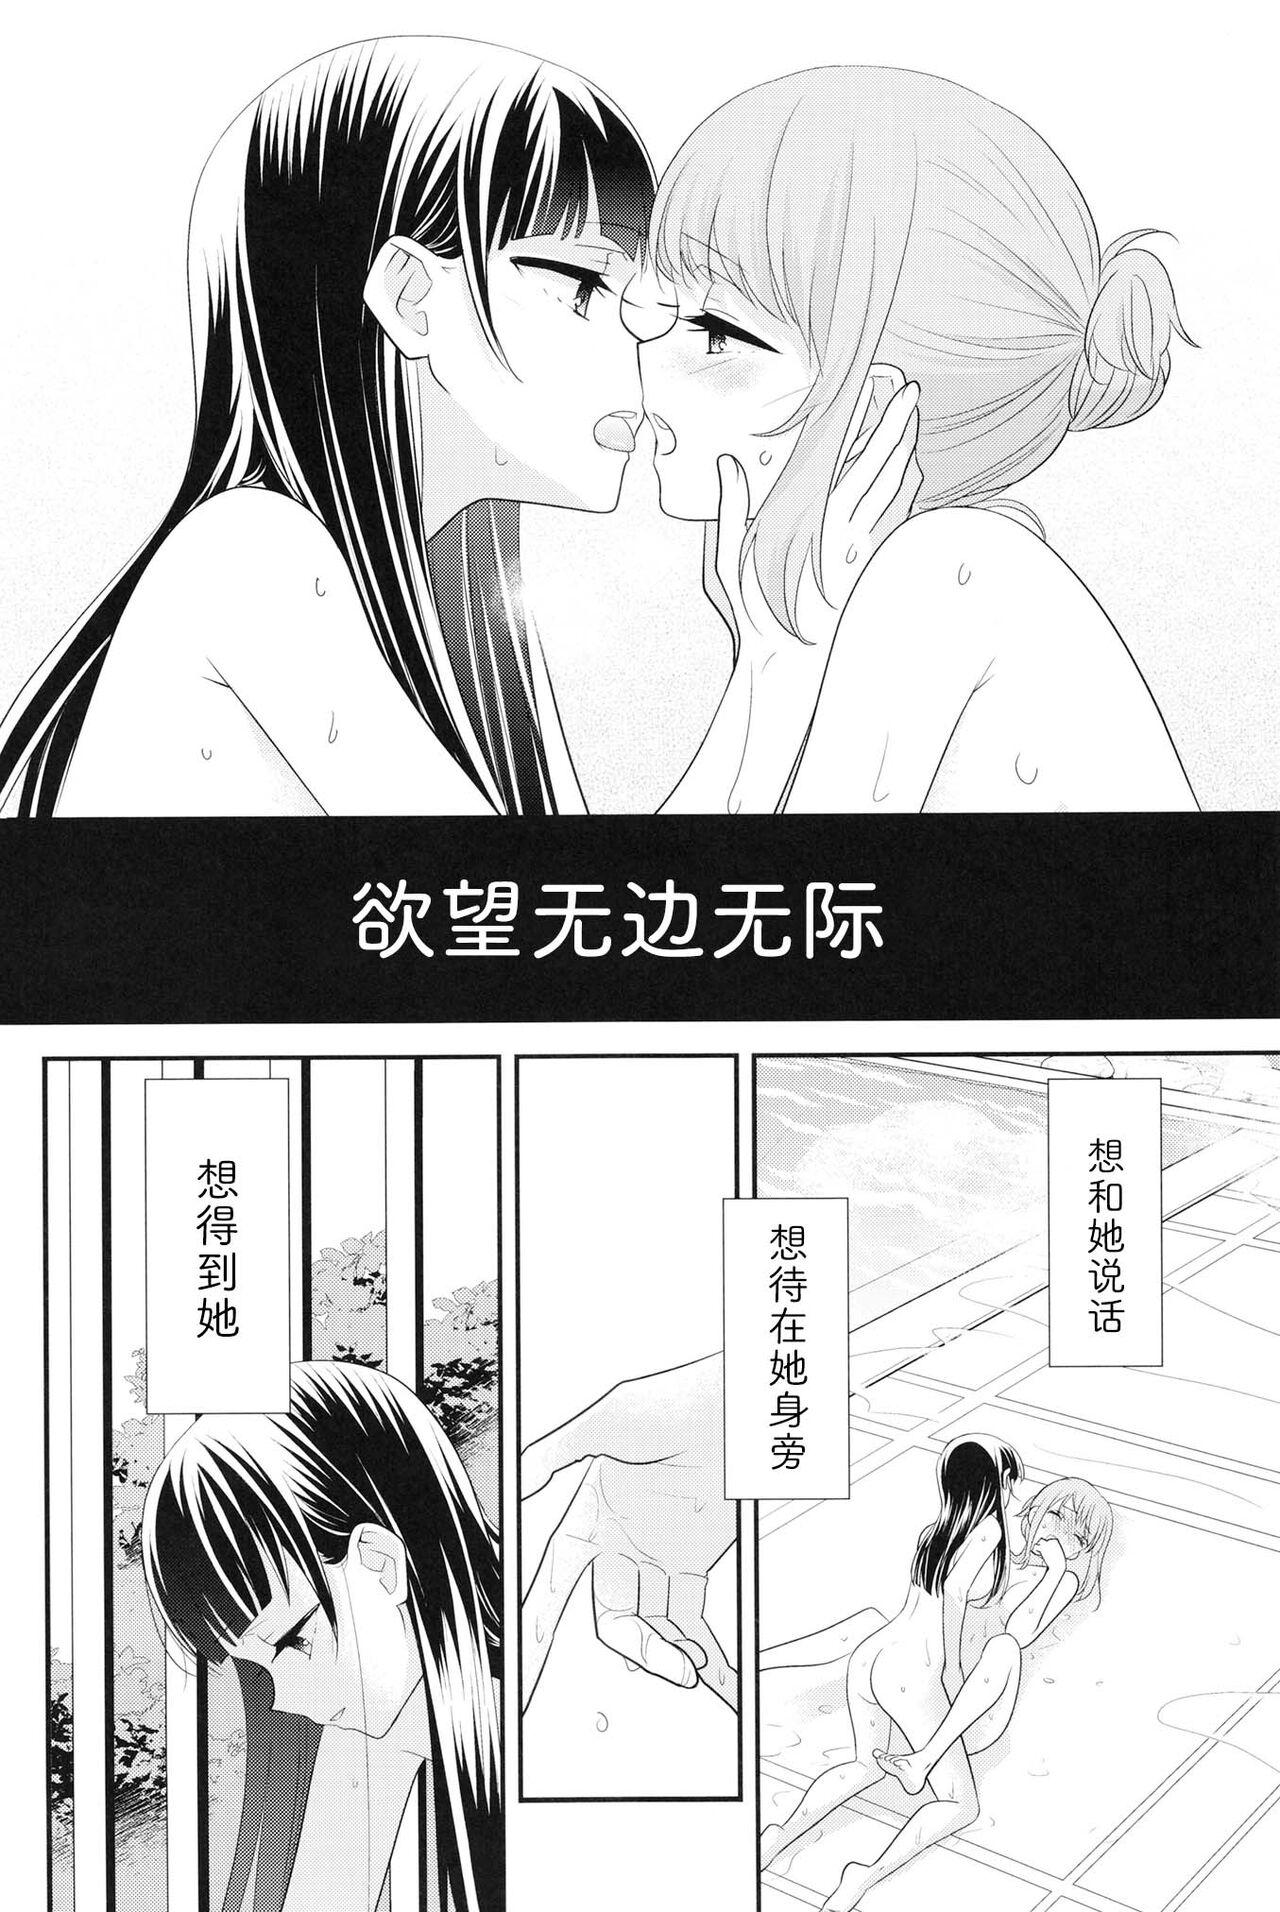 Eng Sub Torokeru Joshi Yu 6 Transgender - Page 6